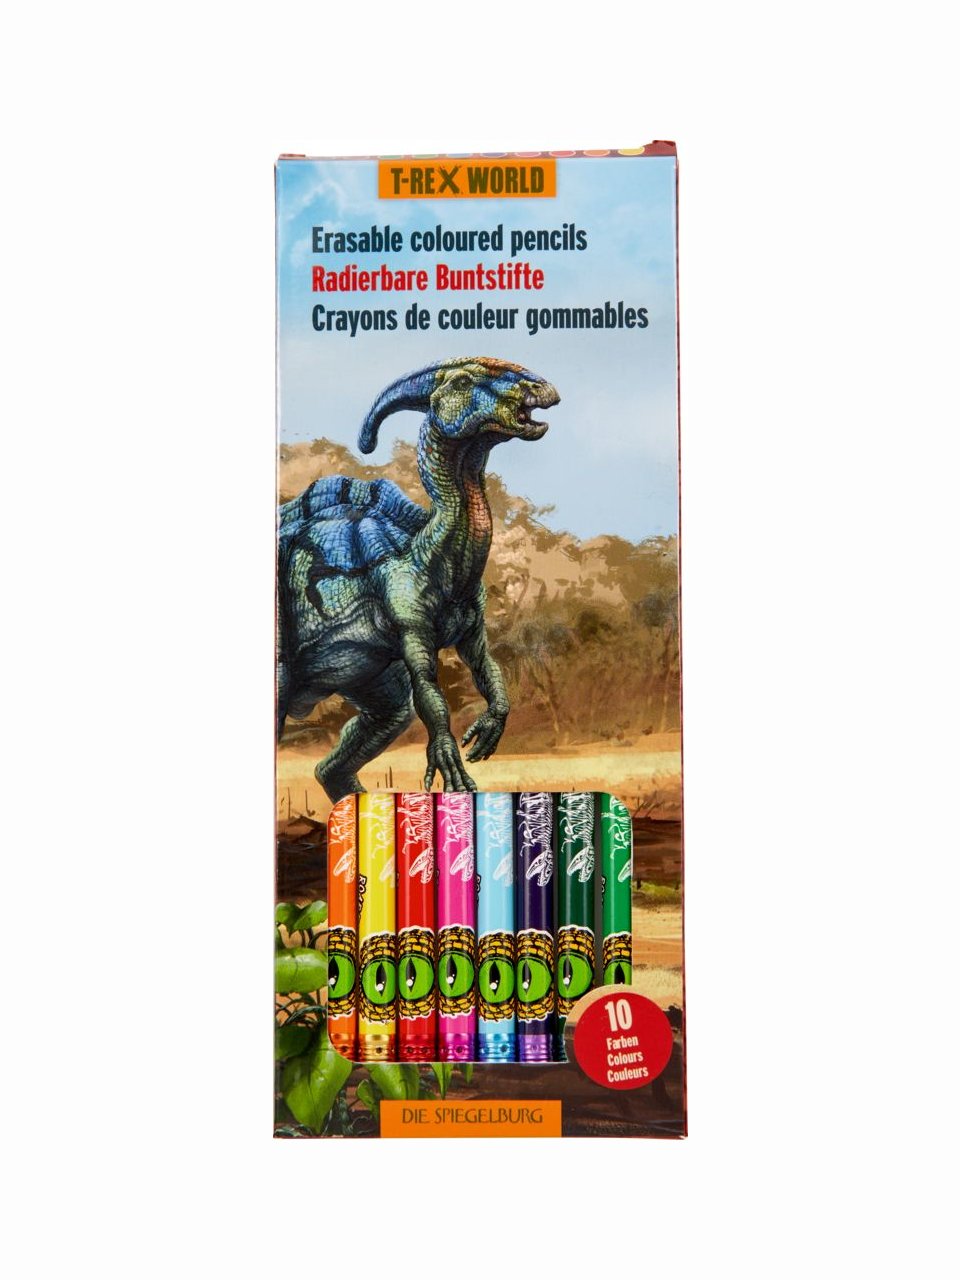 Radierbare Buntstifte – T-Rex World